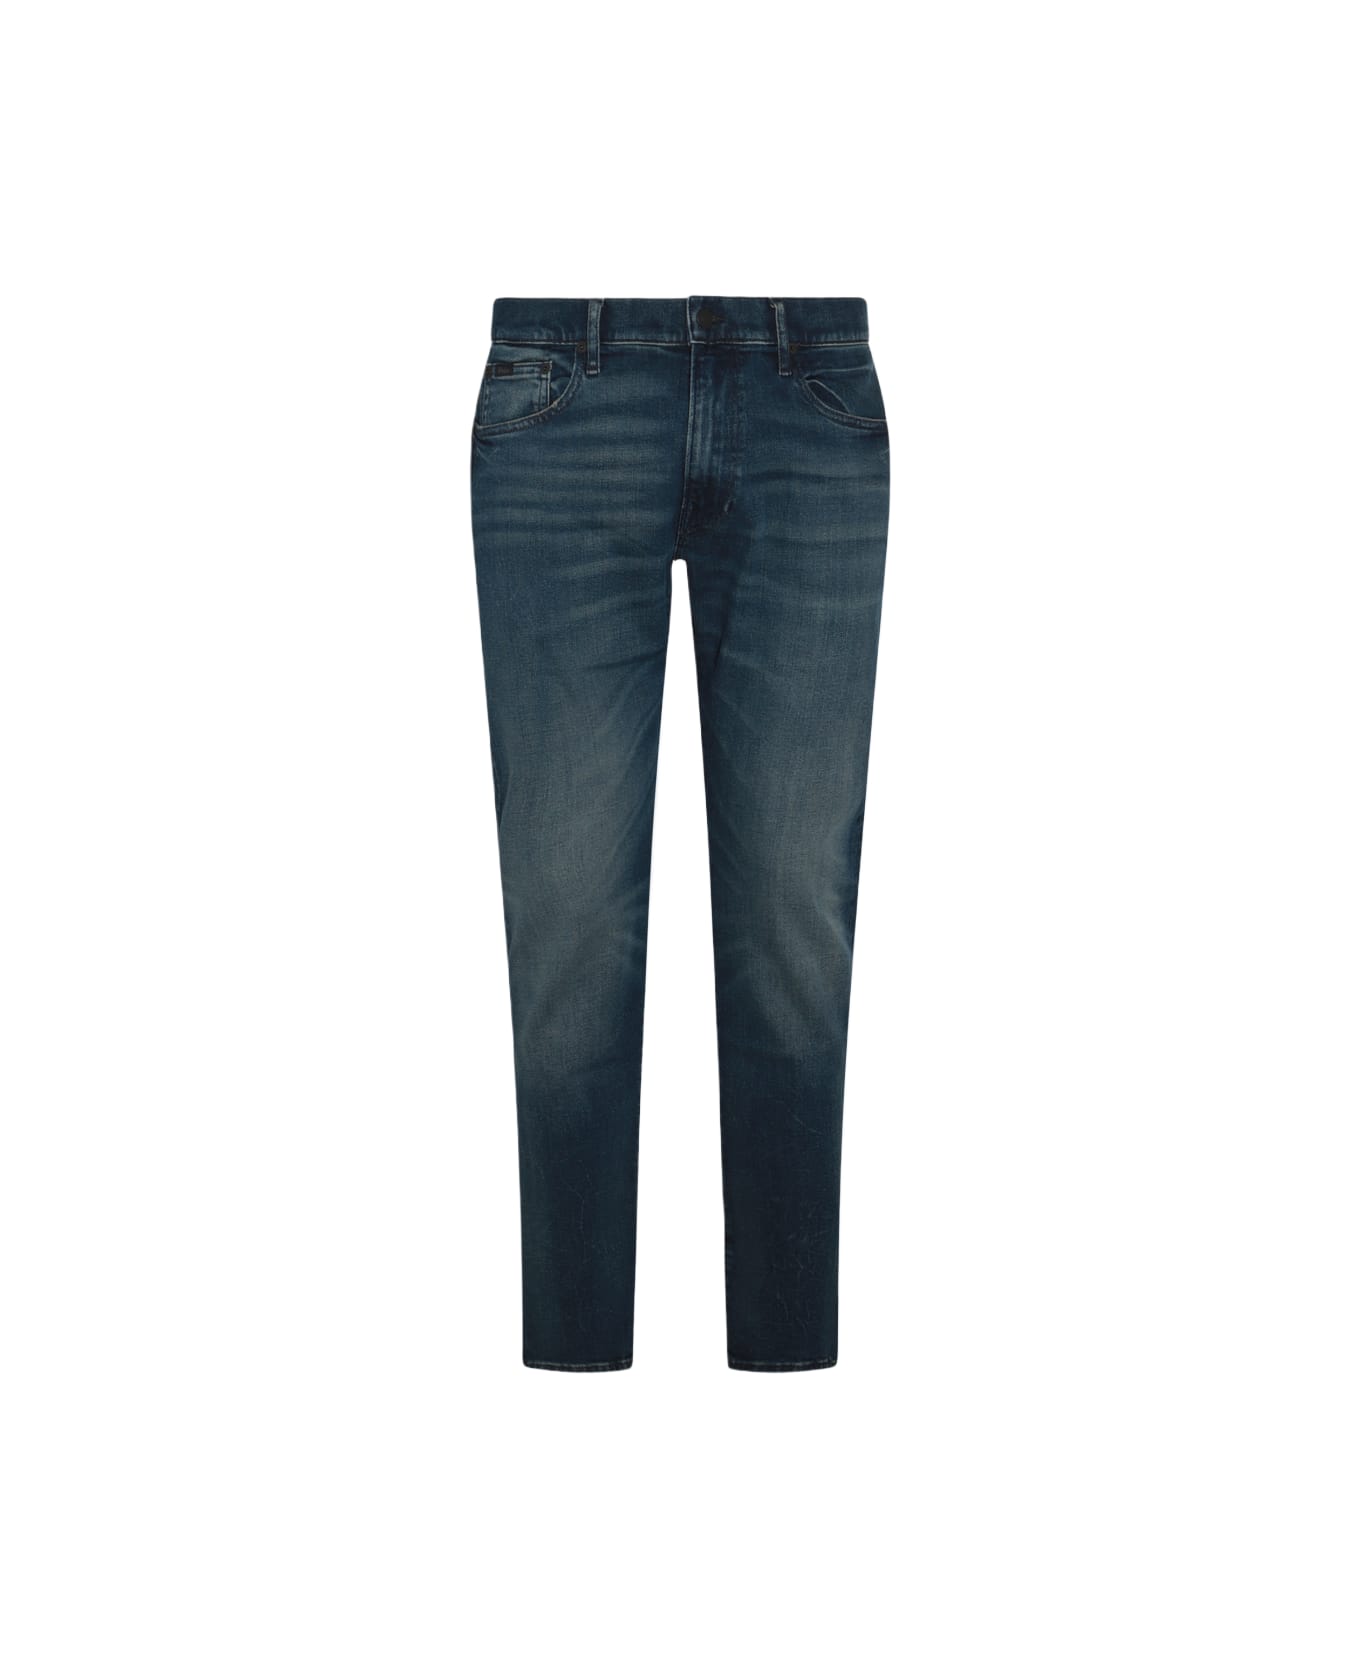 Polo Ralph Lauren Dark Blue Cotton Denim Jeans - MYERS V3